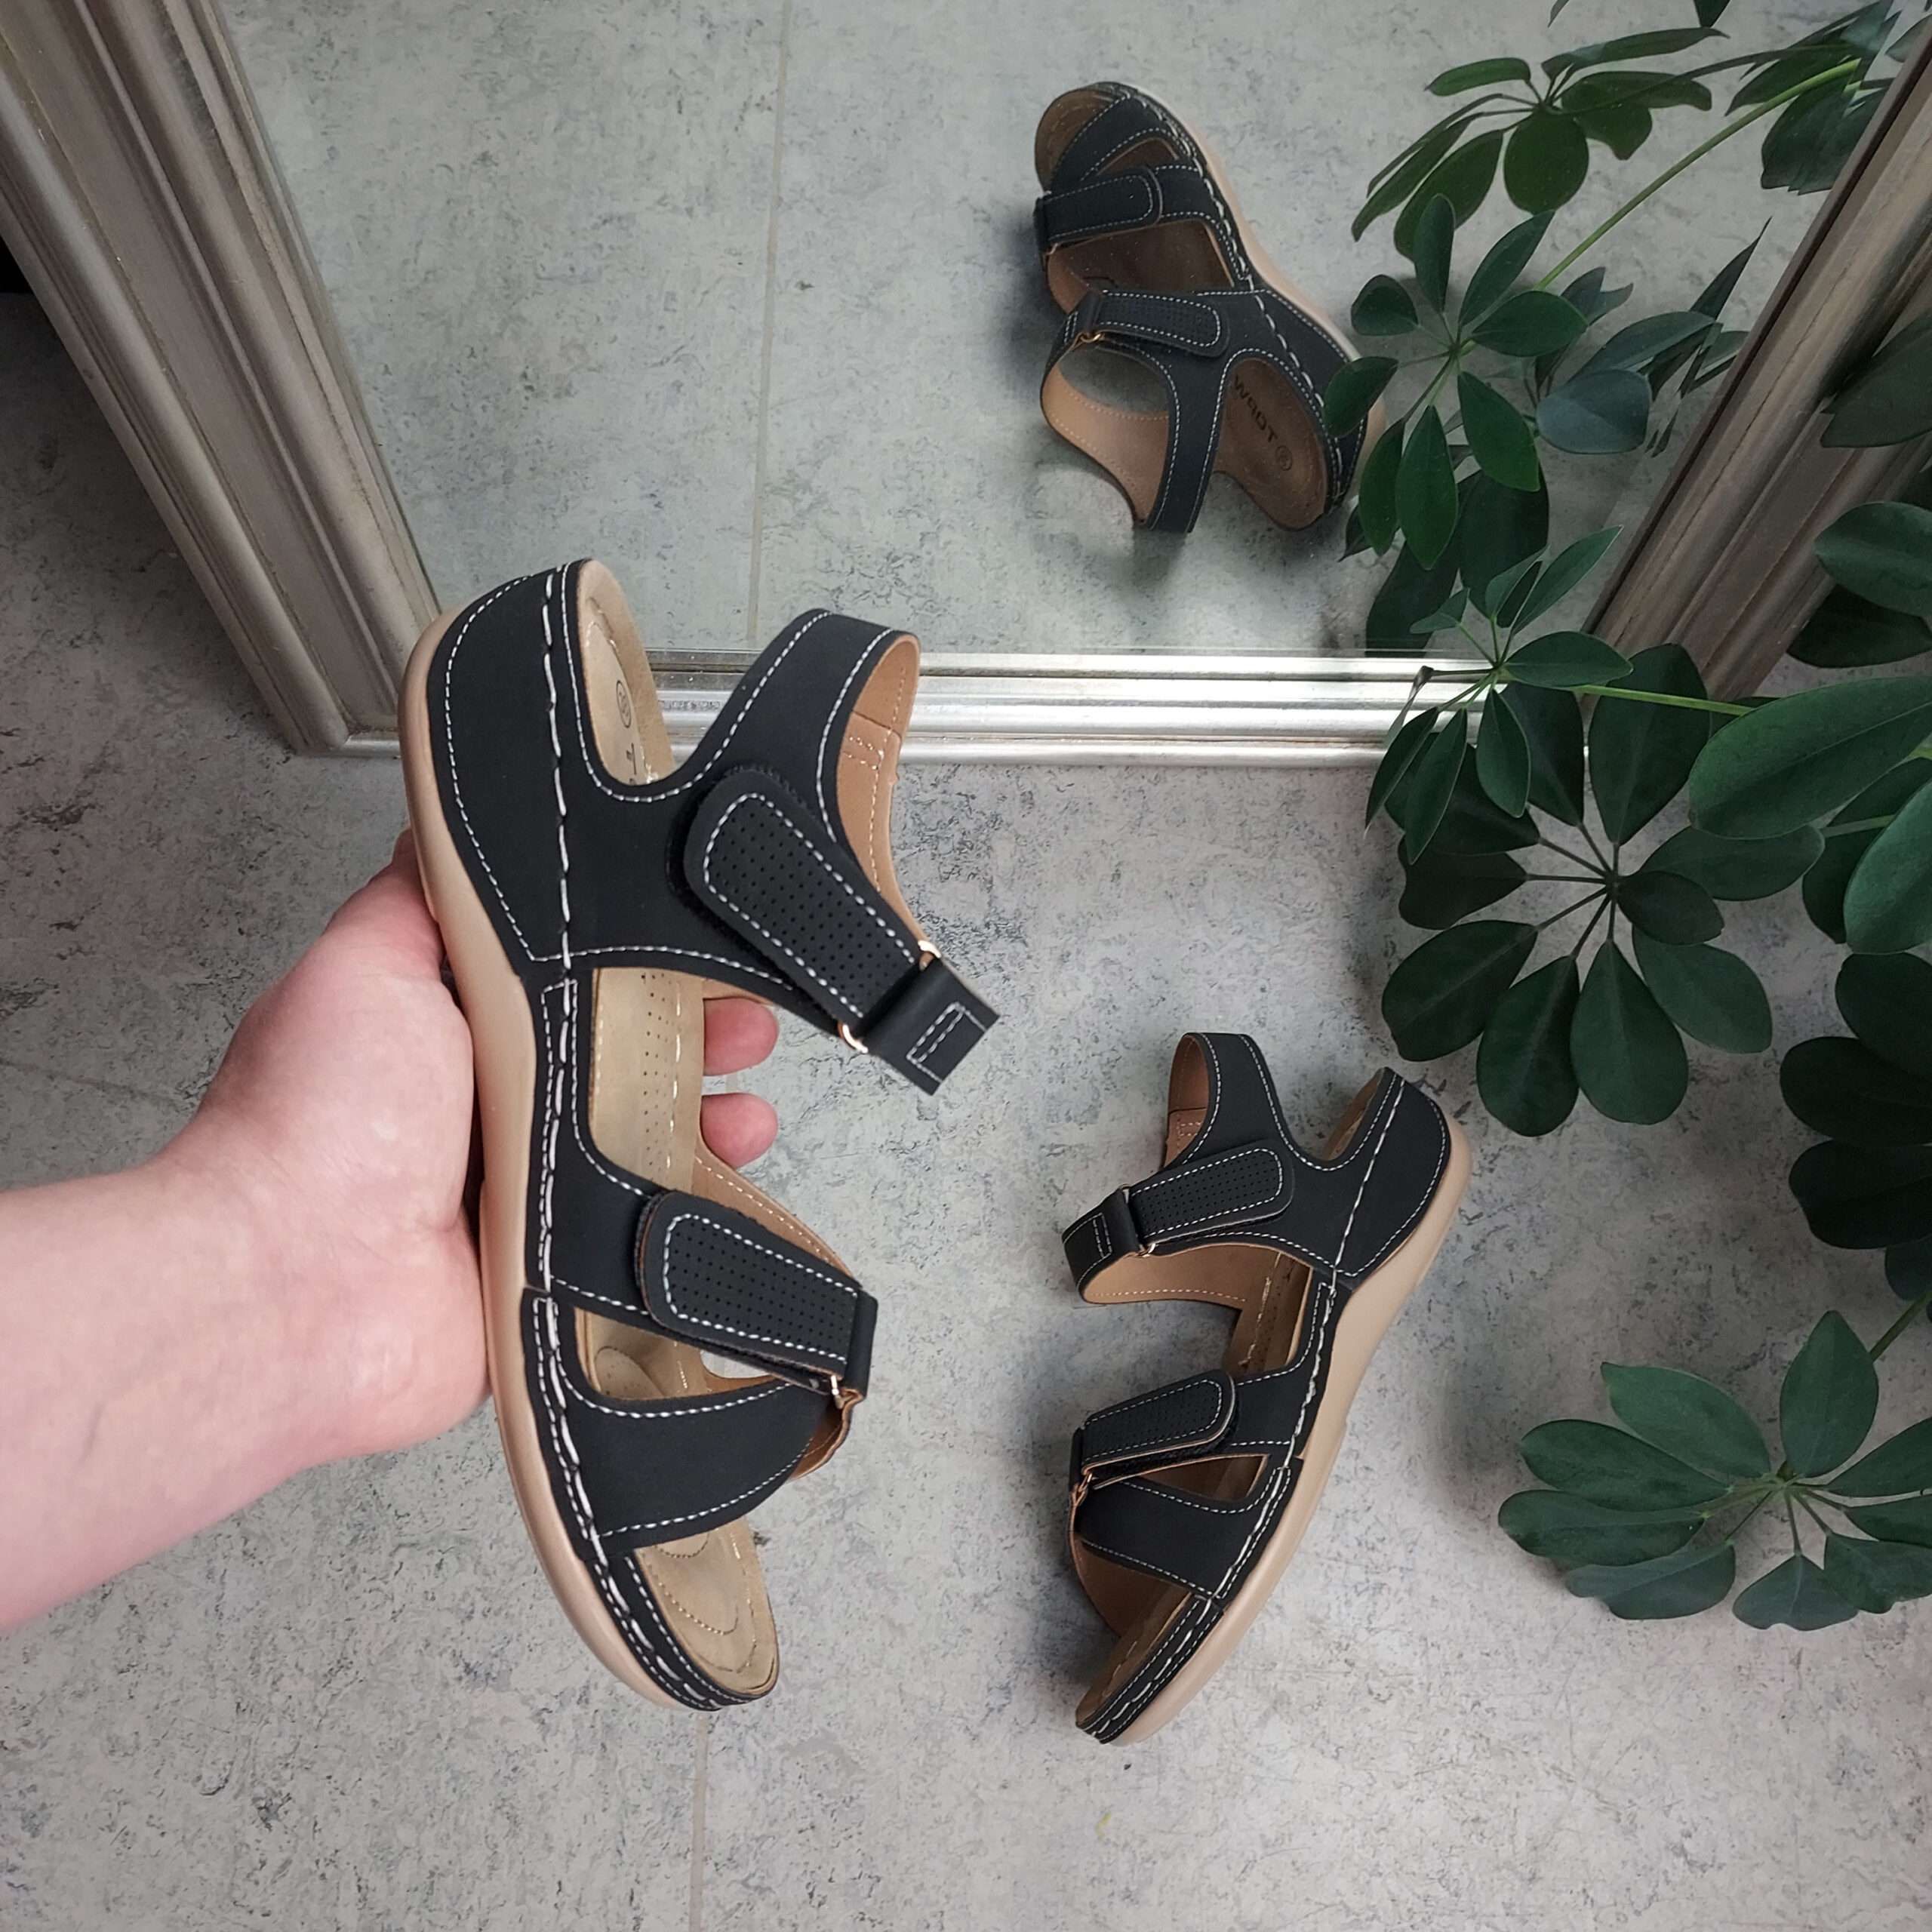 Kilde Faktisk medaljevinder Let sort sandal til den smalle fod - Sygeplejebutikken